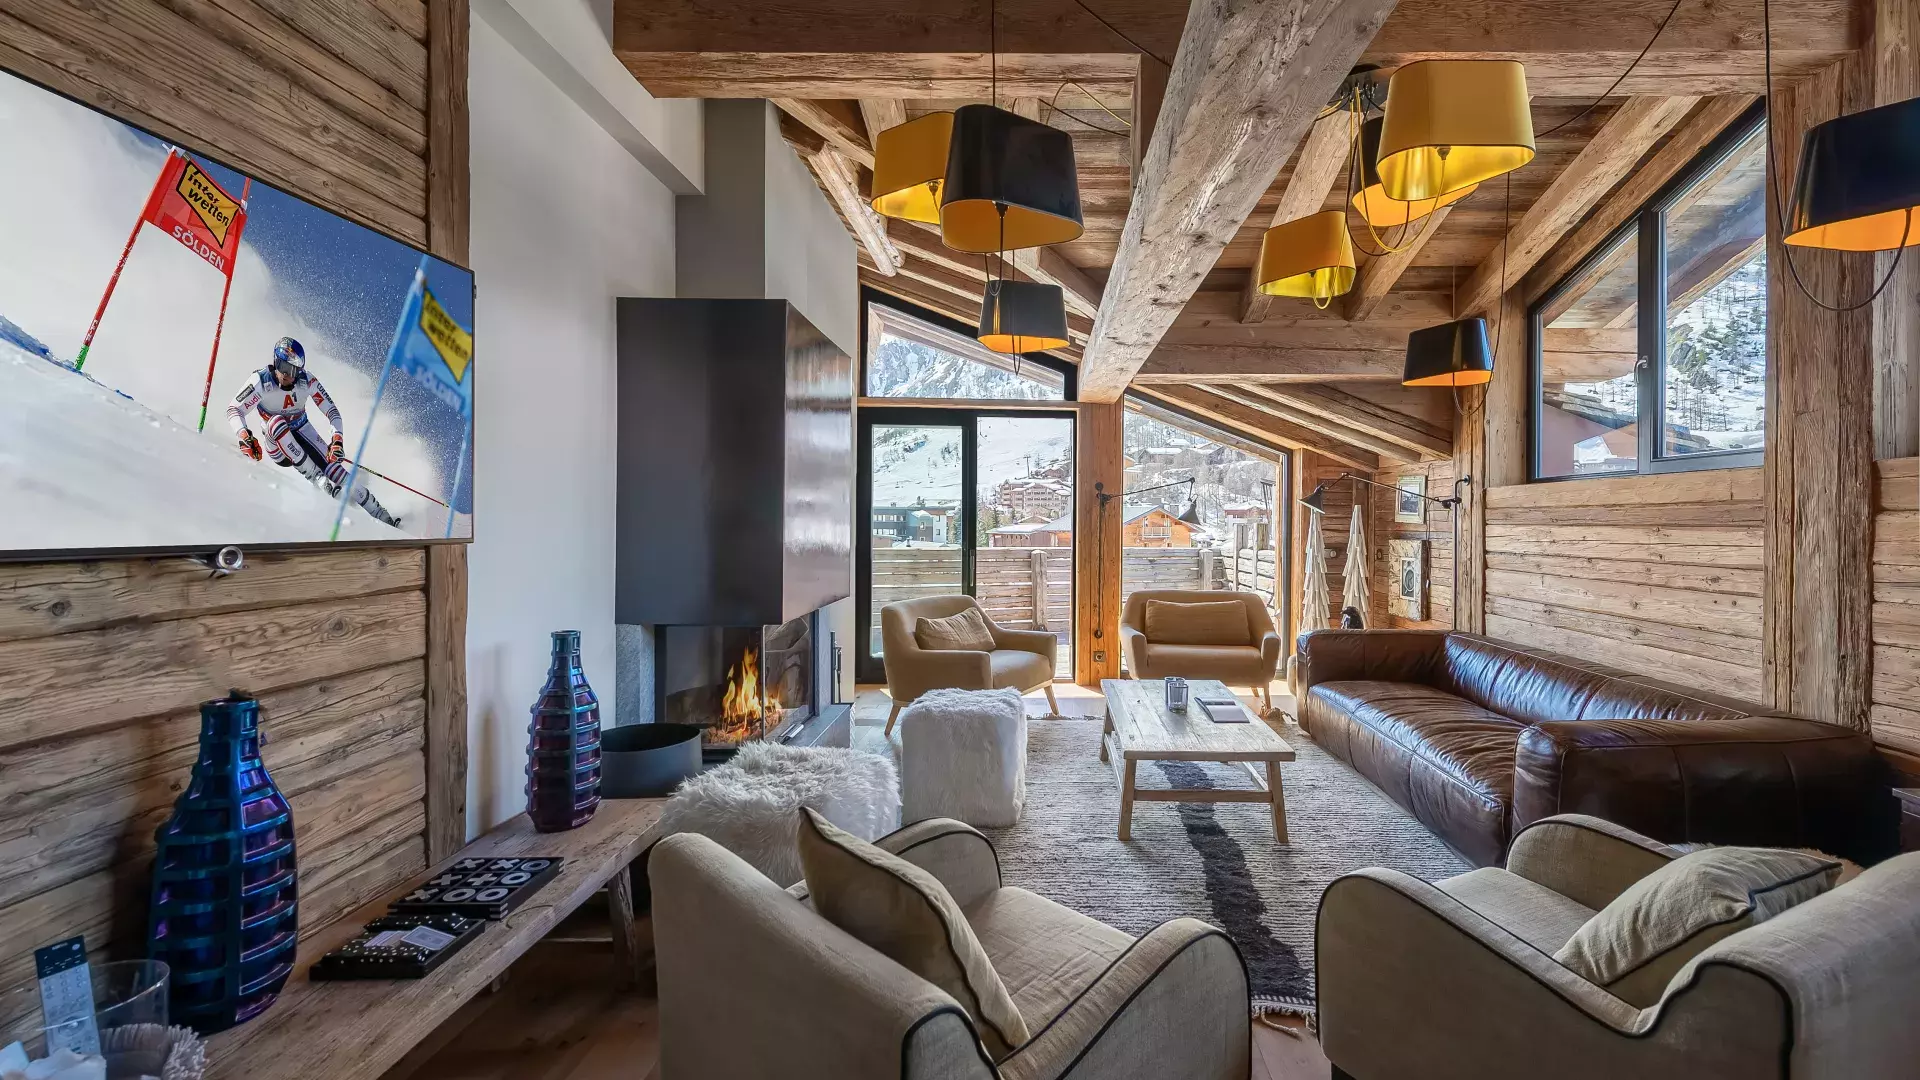 Appartement Penthouse Savoie 1 - Location chalets Covarel - Val d'Isère Alpes - France - Salon